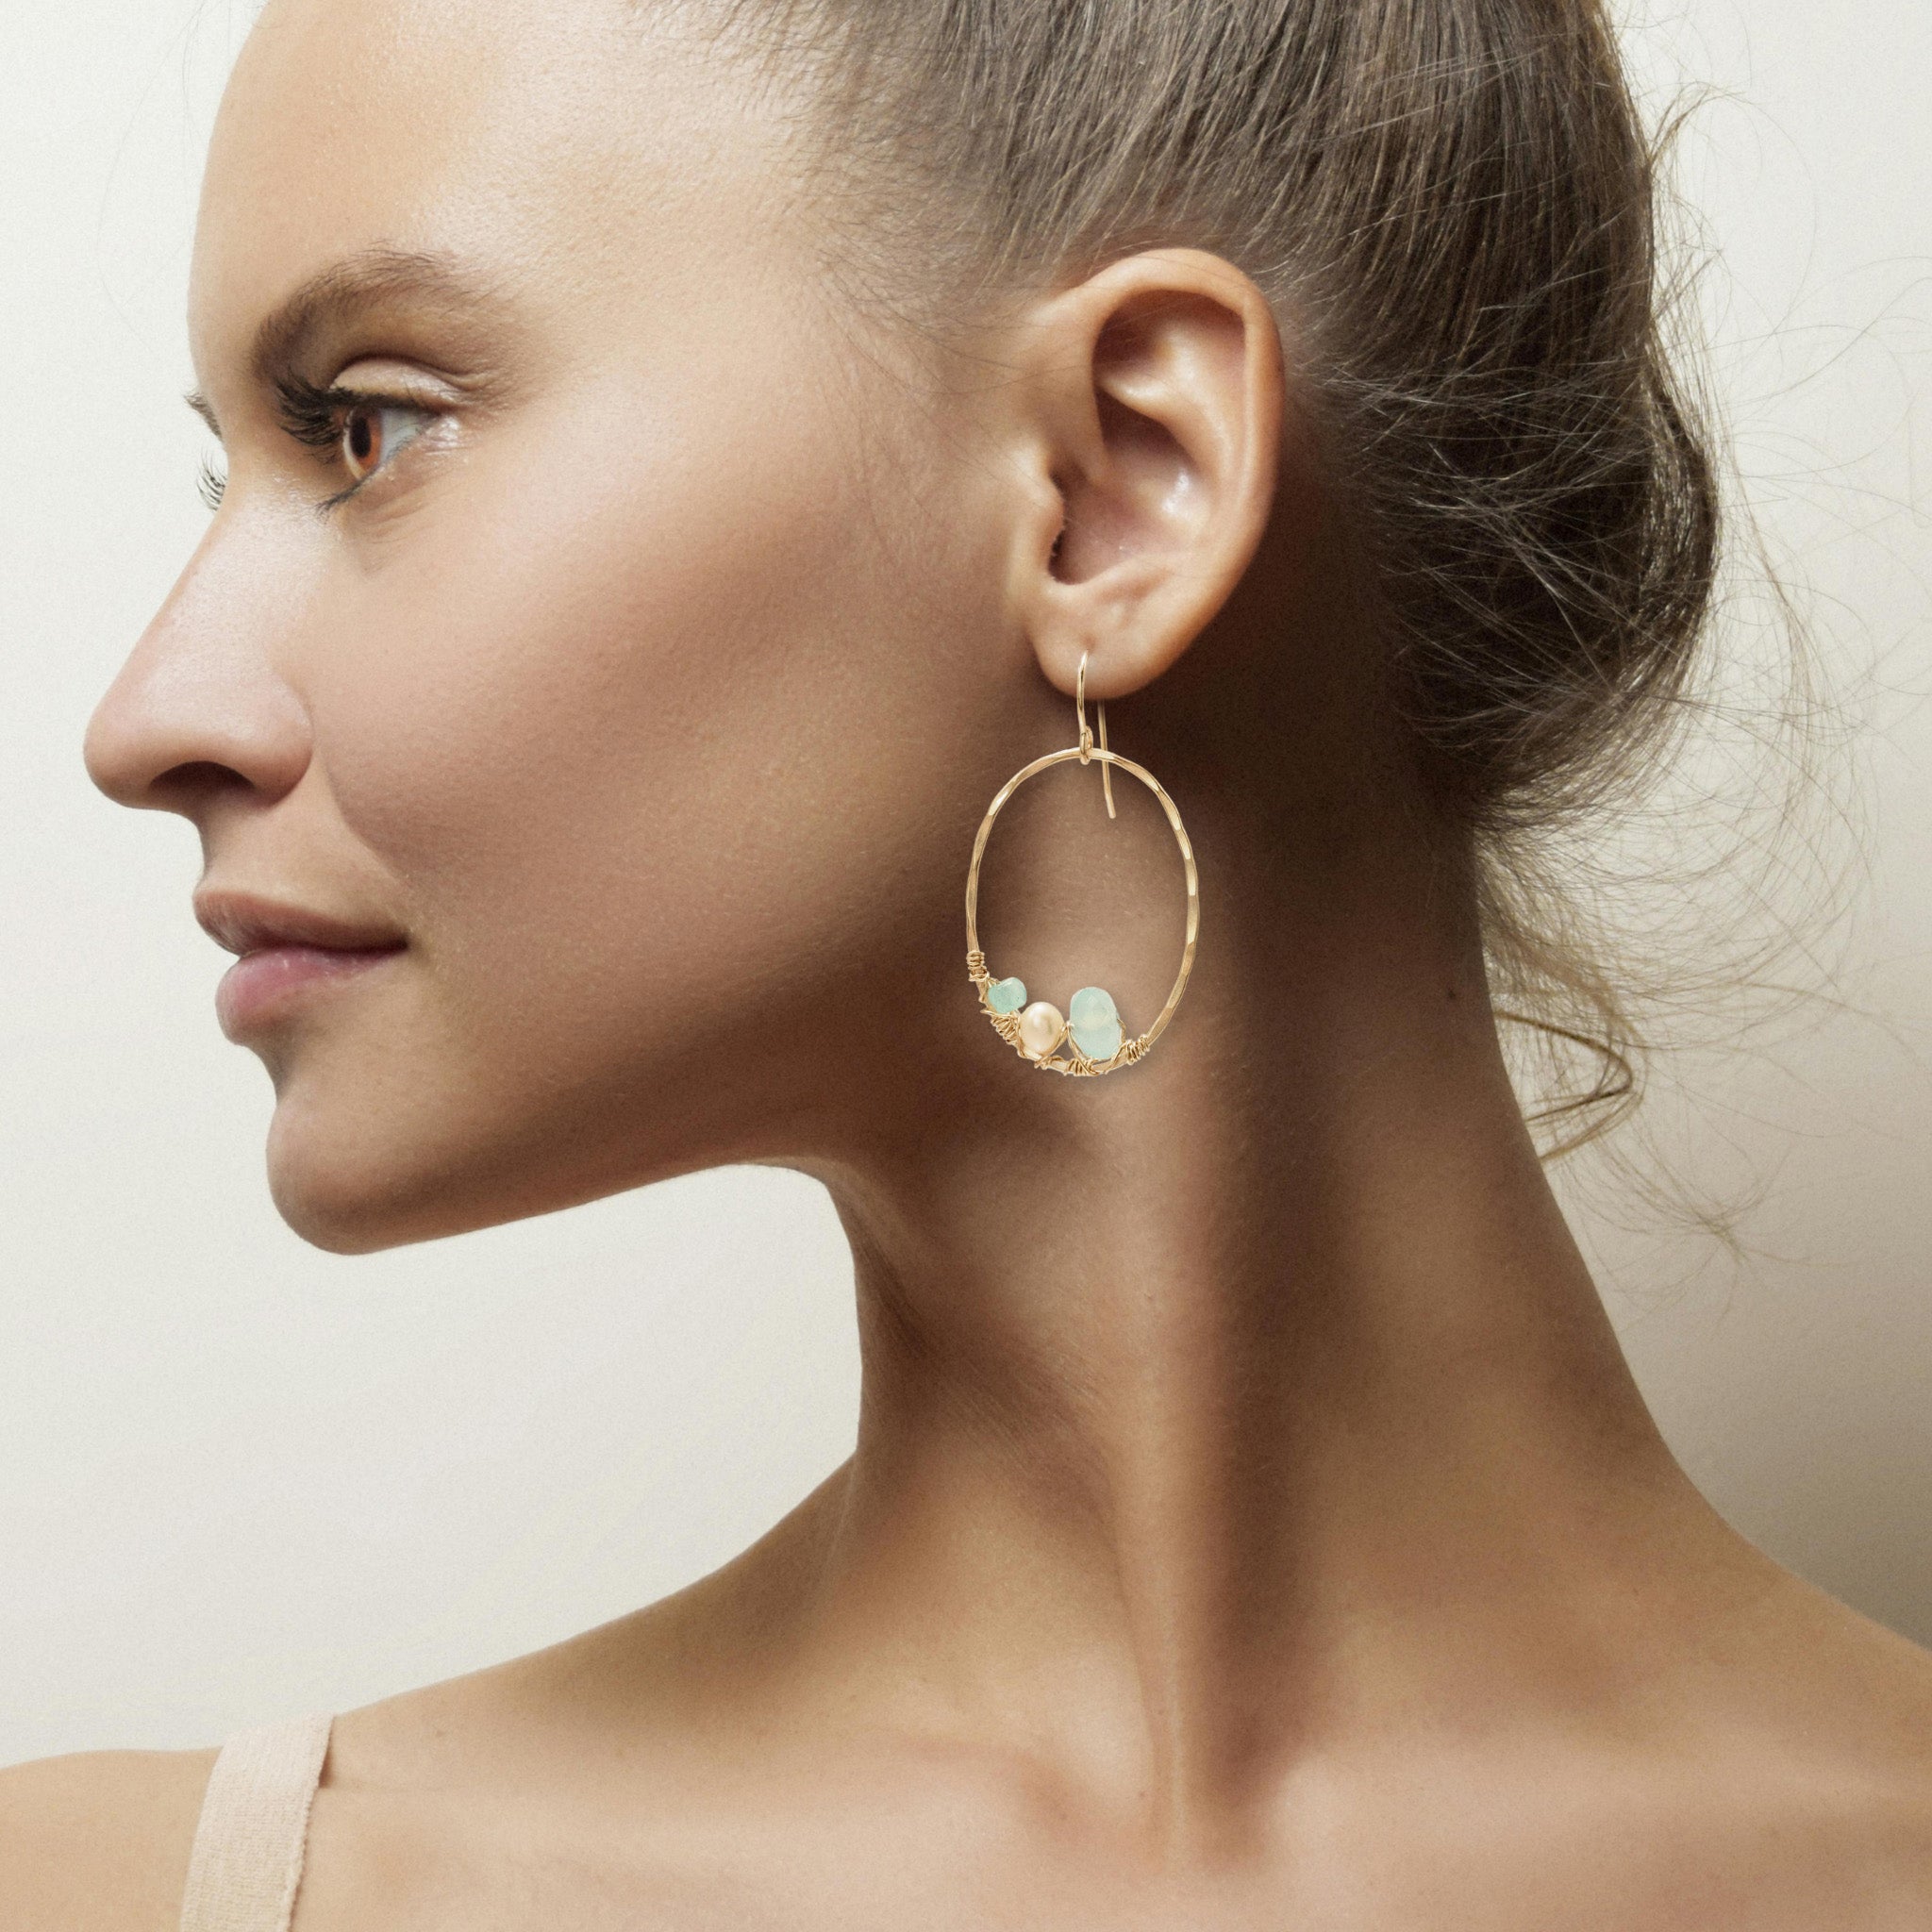 Oval Aqua Earrings - Earrings